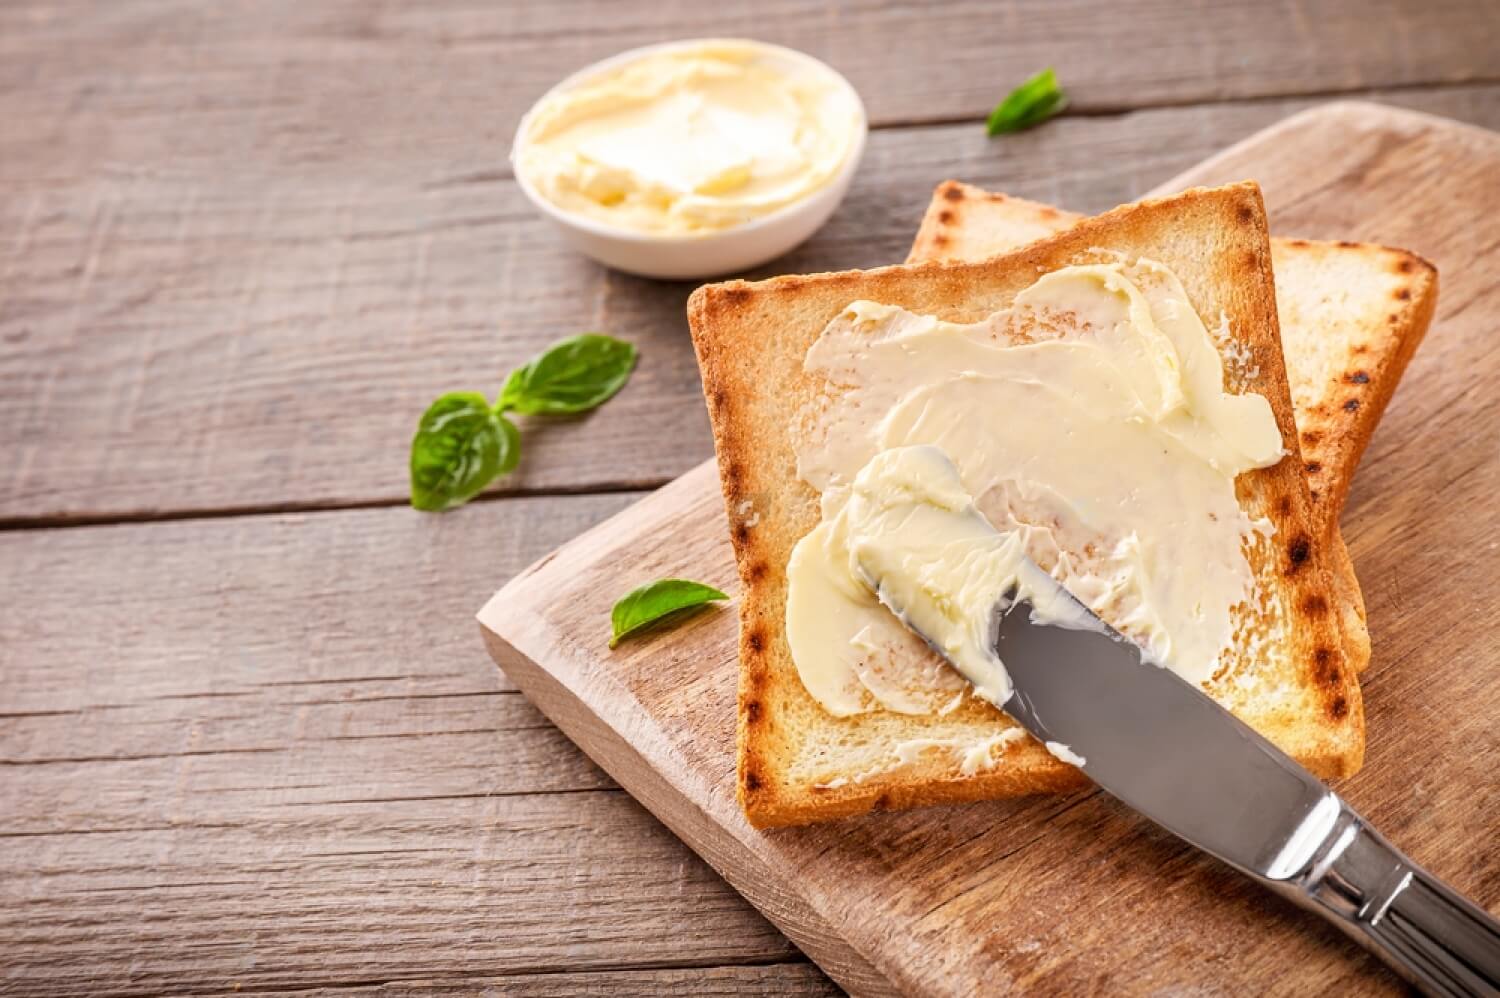 Nisa Bakri Gourmet's exquisite Butter & Spread